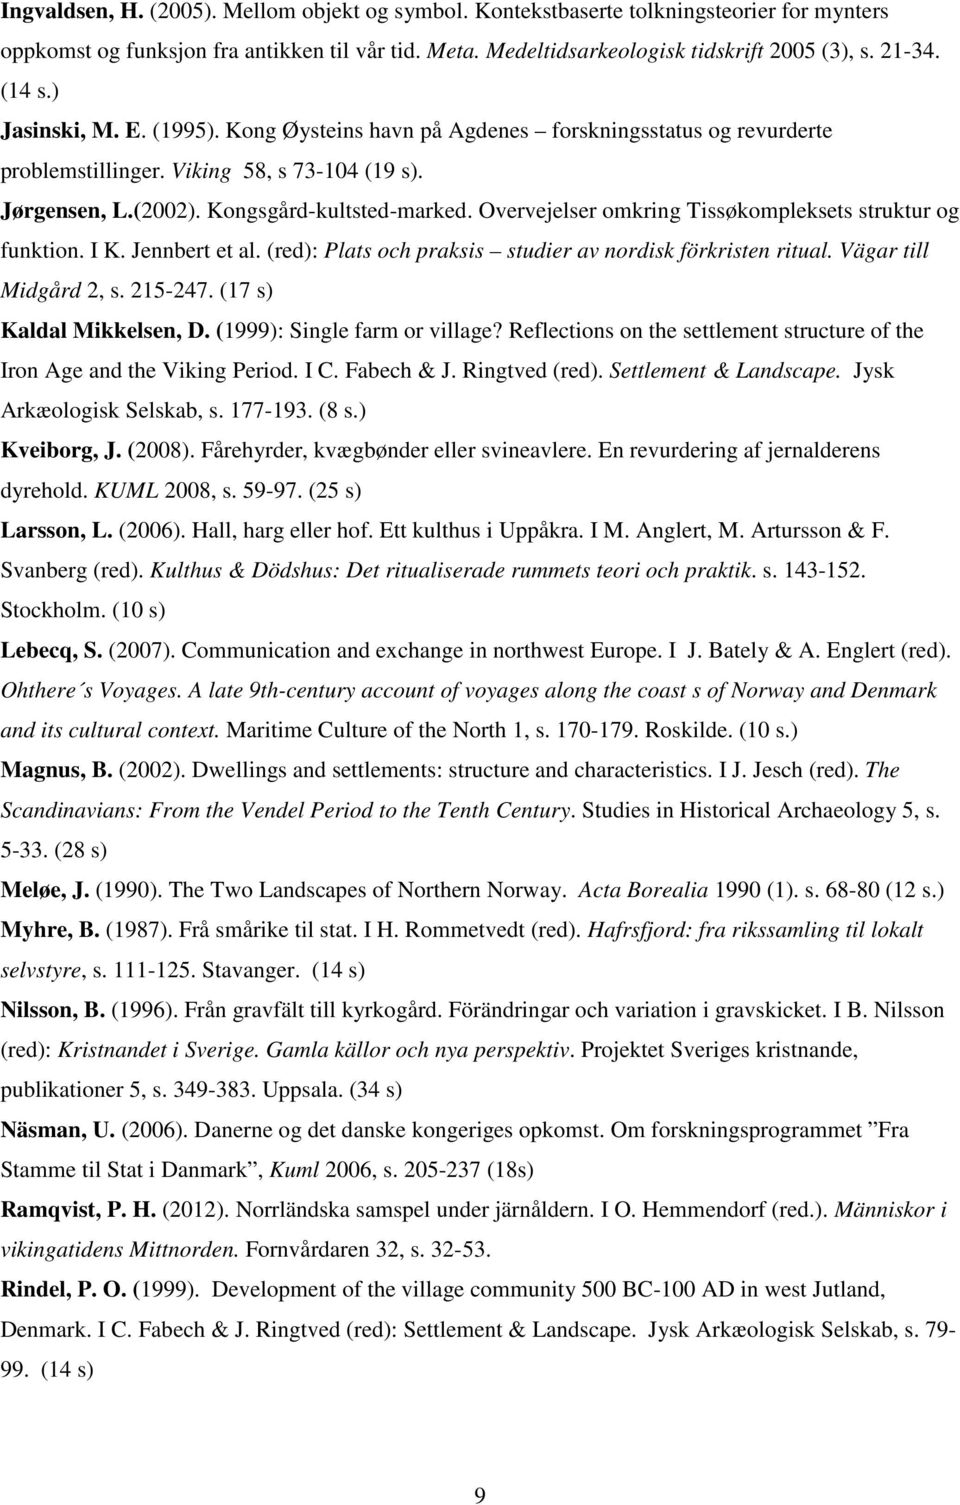 Overvejelser omkring Tissøkompleksets struktur og funktion. I K. Jennbert et al. (red): Plats och praksis studier av nordisk förkristen ritual. Vägar till Midgård 2, s. 215-247.